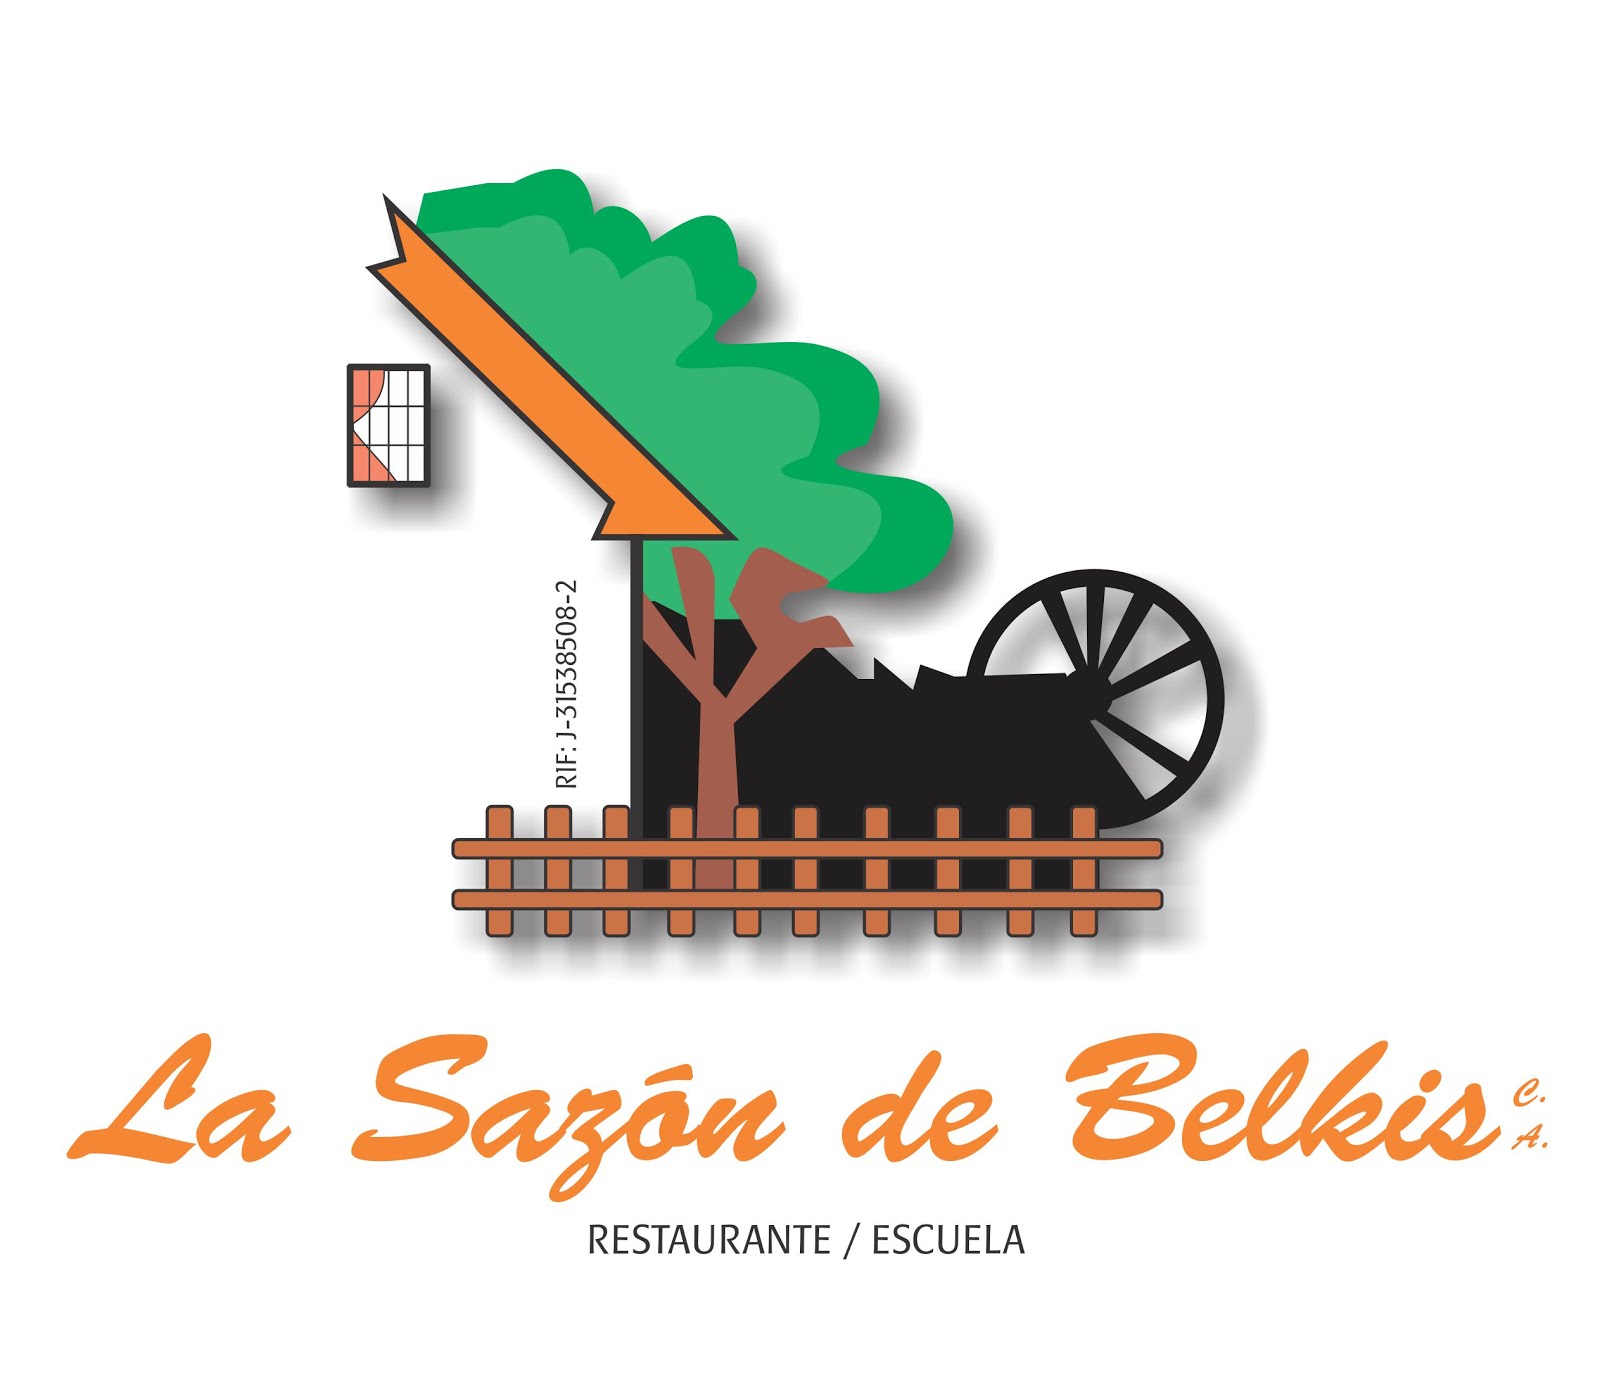 Restaurante Escuela La Sazón de Belkis